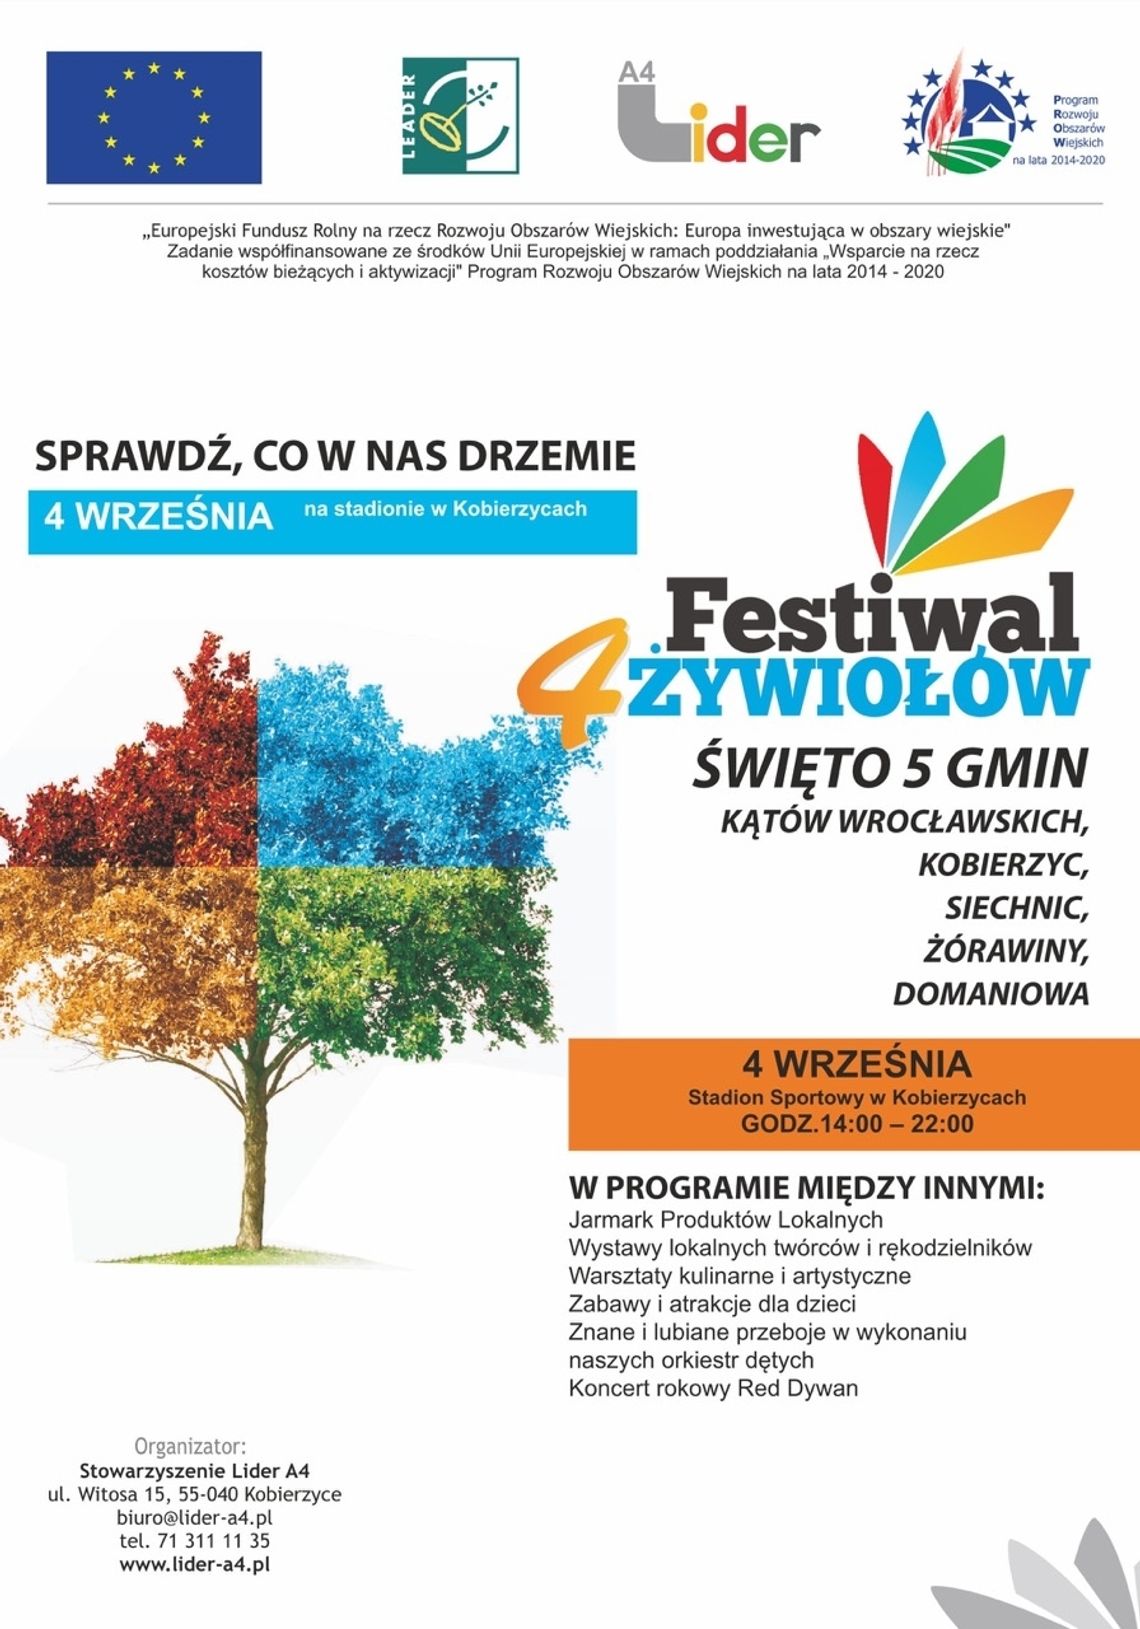 W niedzielę na stadionie w Kobierzycach Święto 5 gmin, czyli Festiwal 4 Żywiołów. 